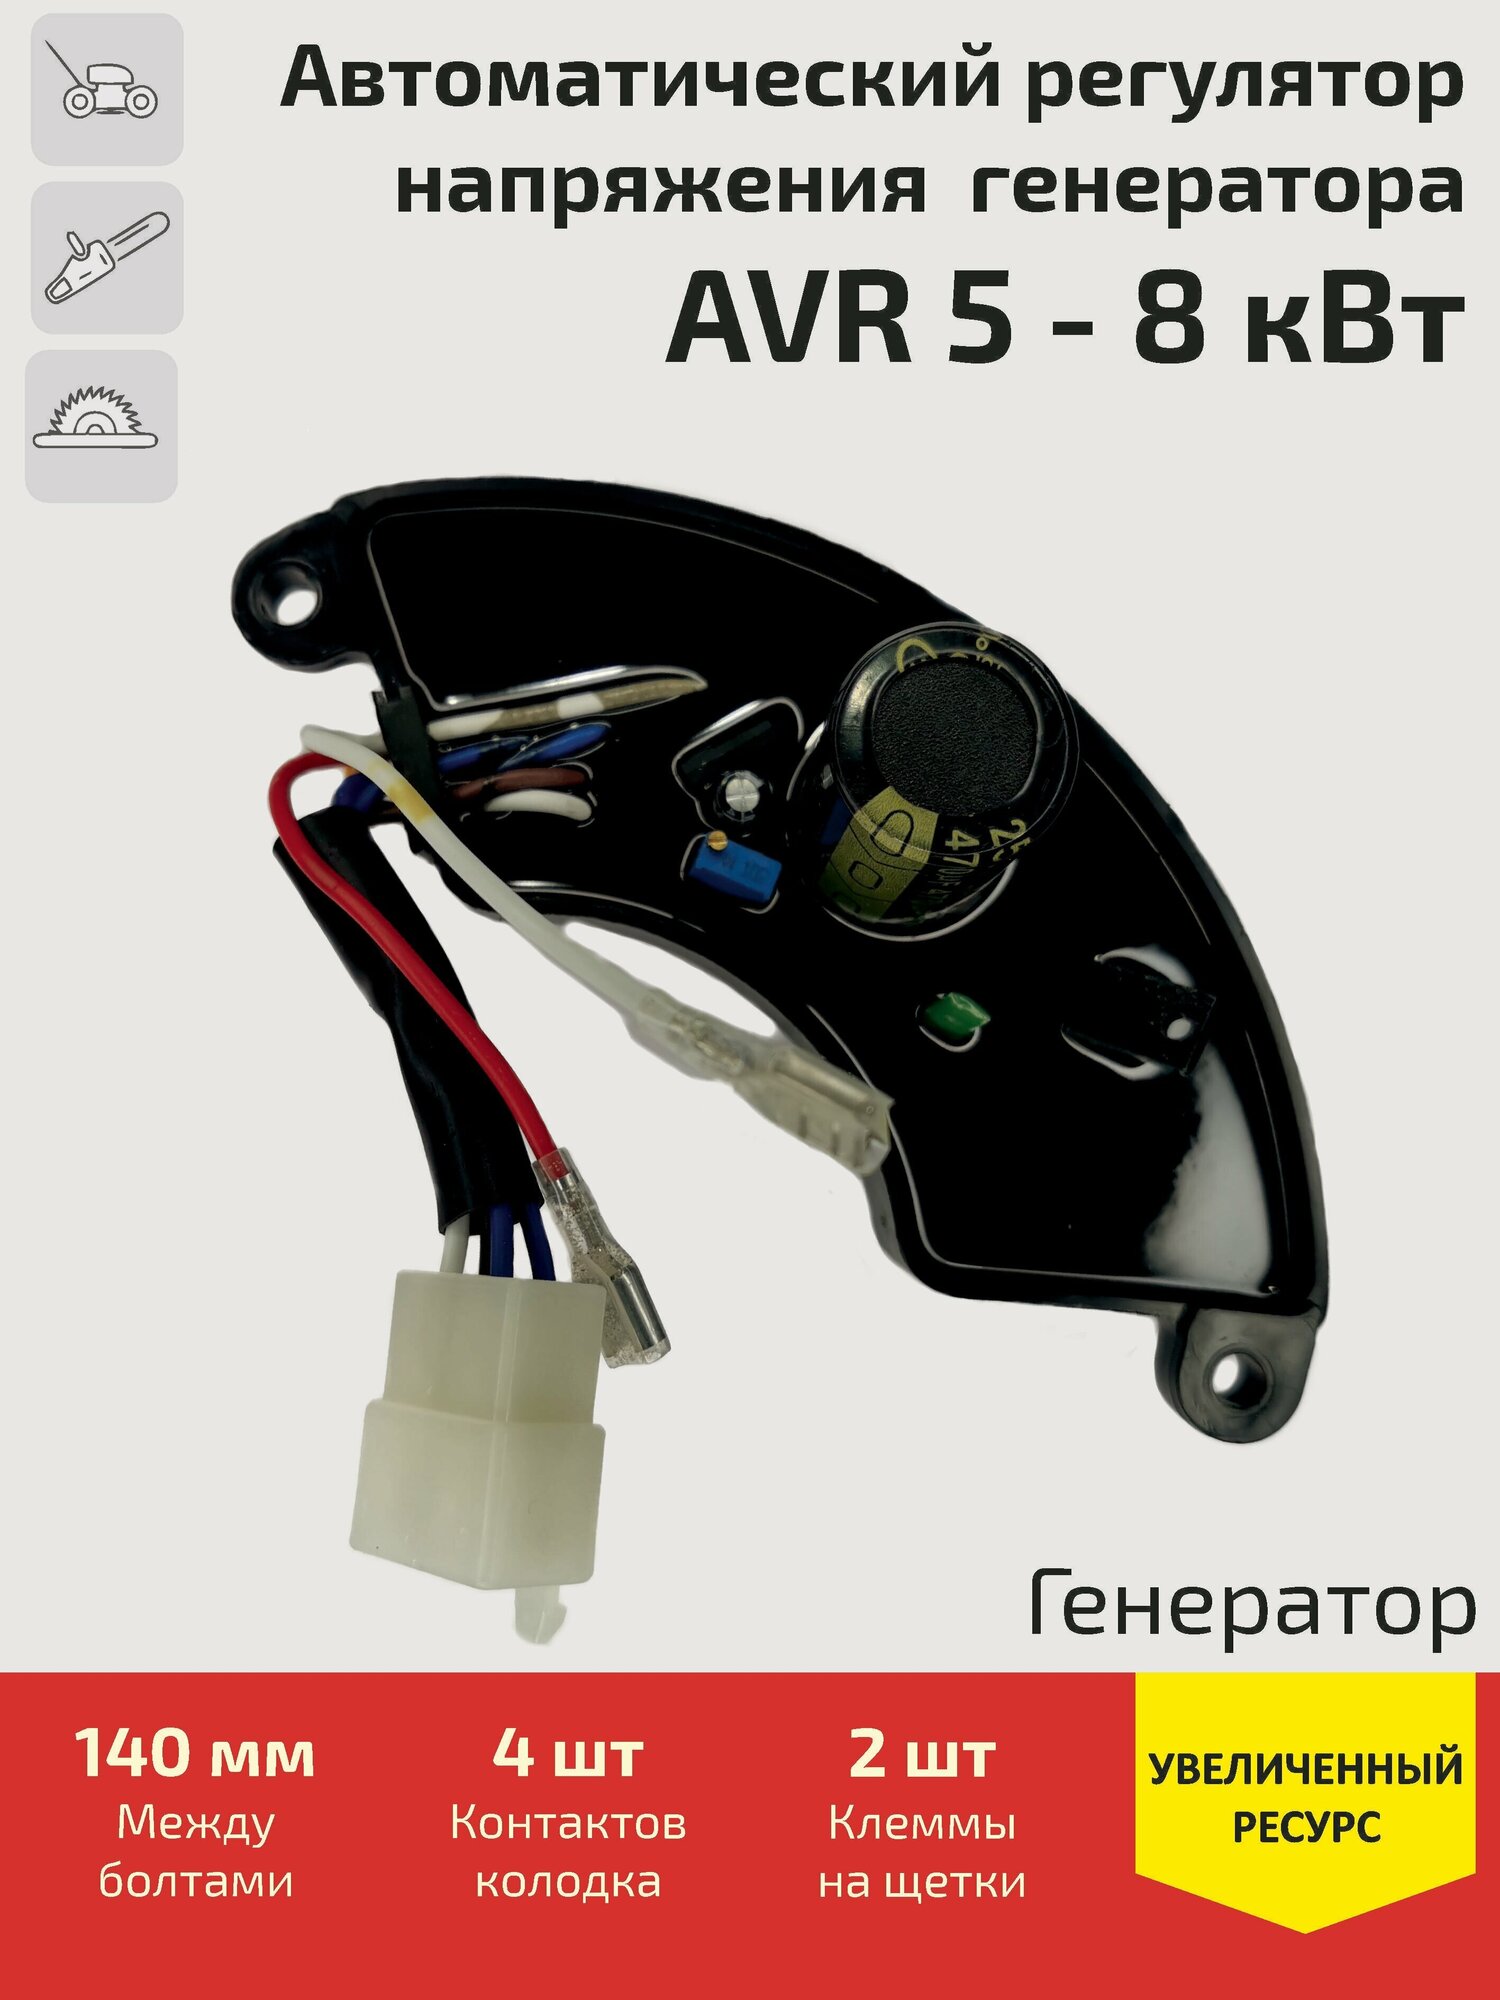 Автоматический регулятор напряжения (блок AVR, АВР) для генератора 5 - 8 кВт (колодка 4 контакта + 2 клеммы)